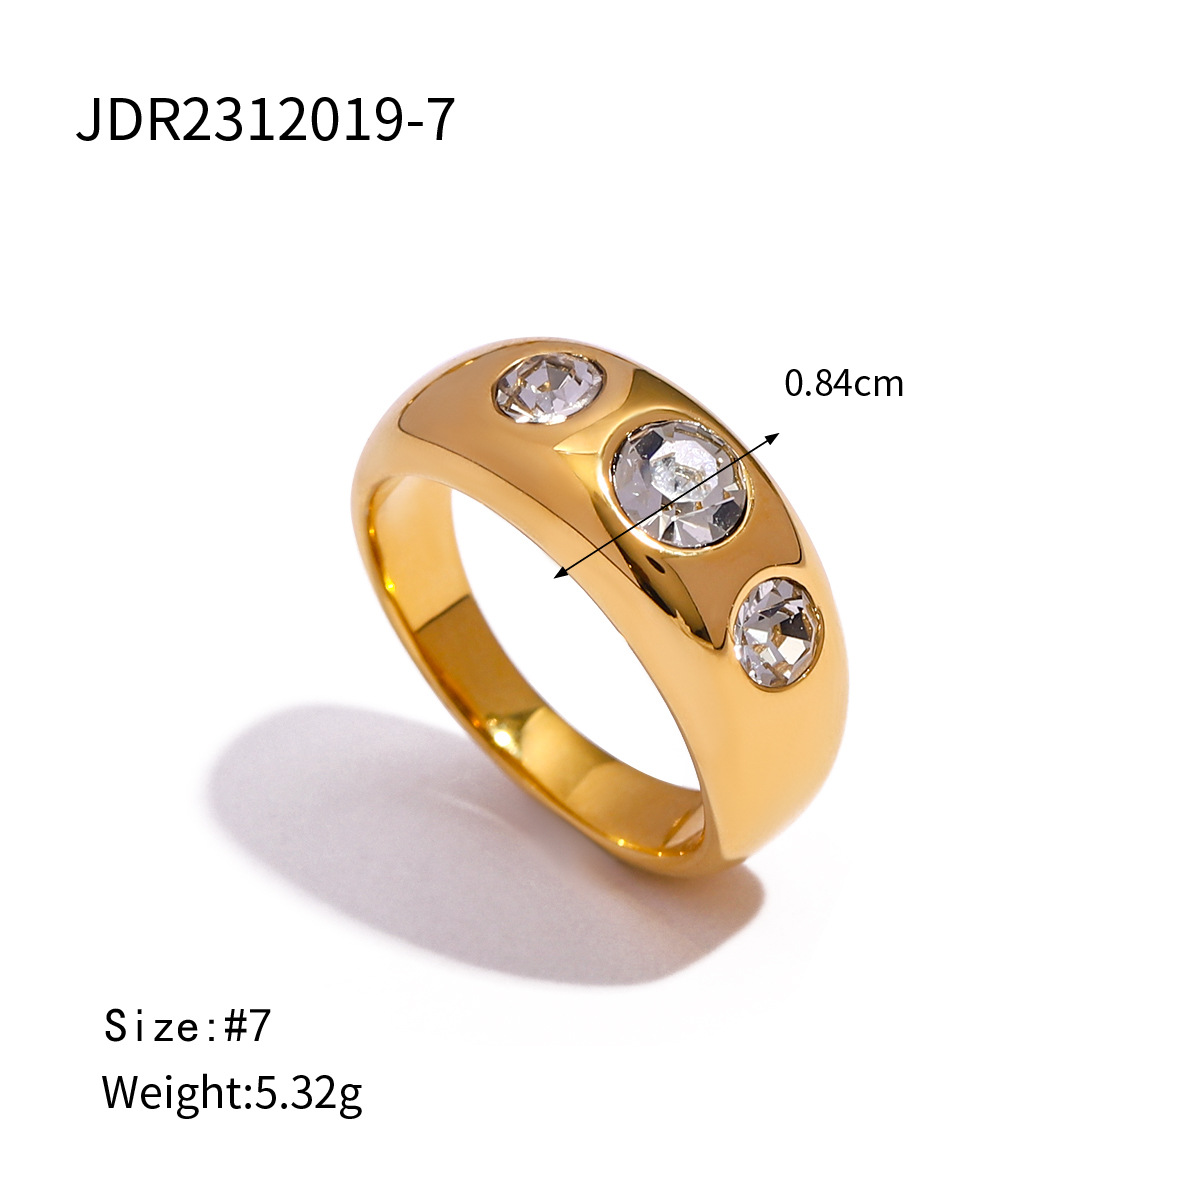 2:JDR2312019-7